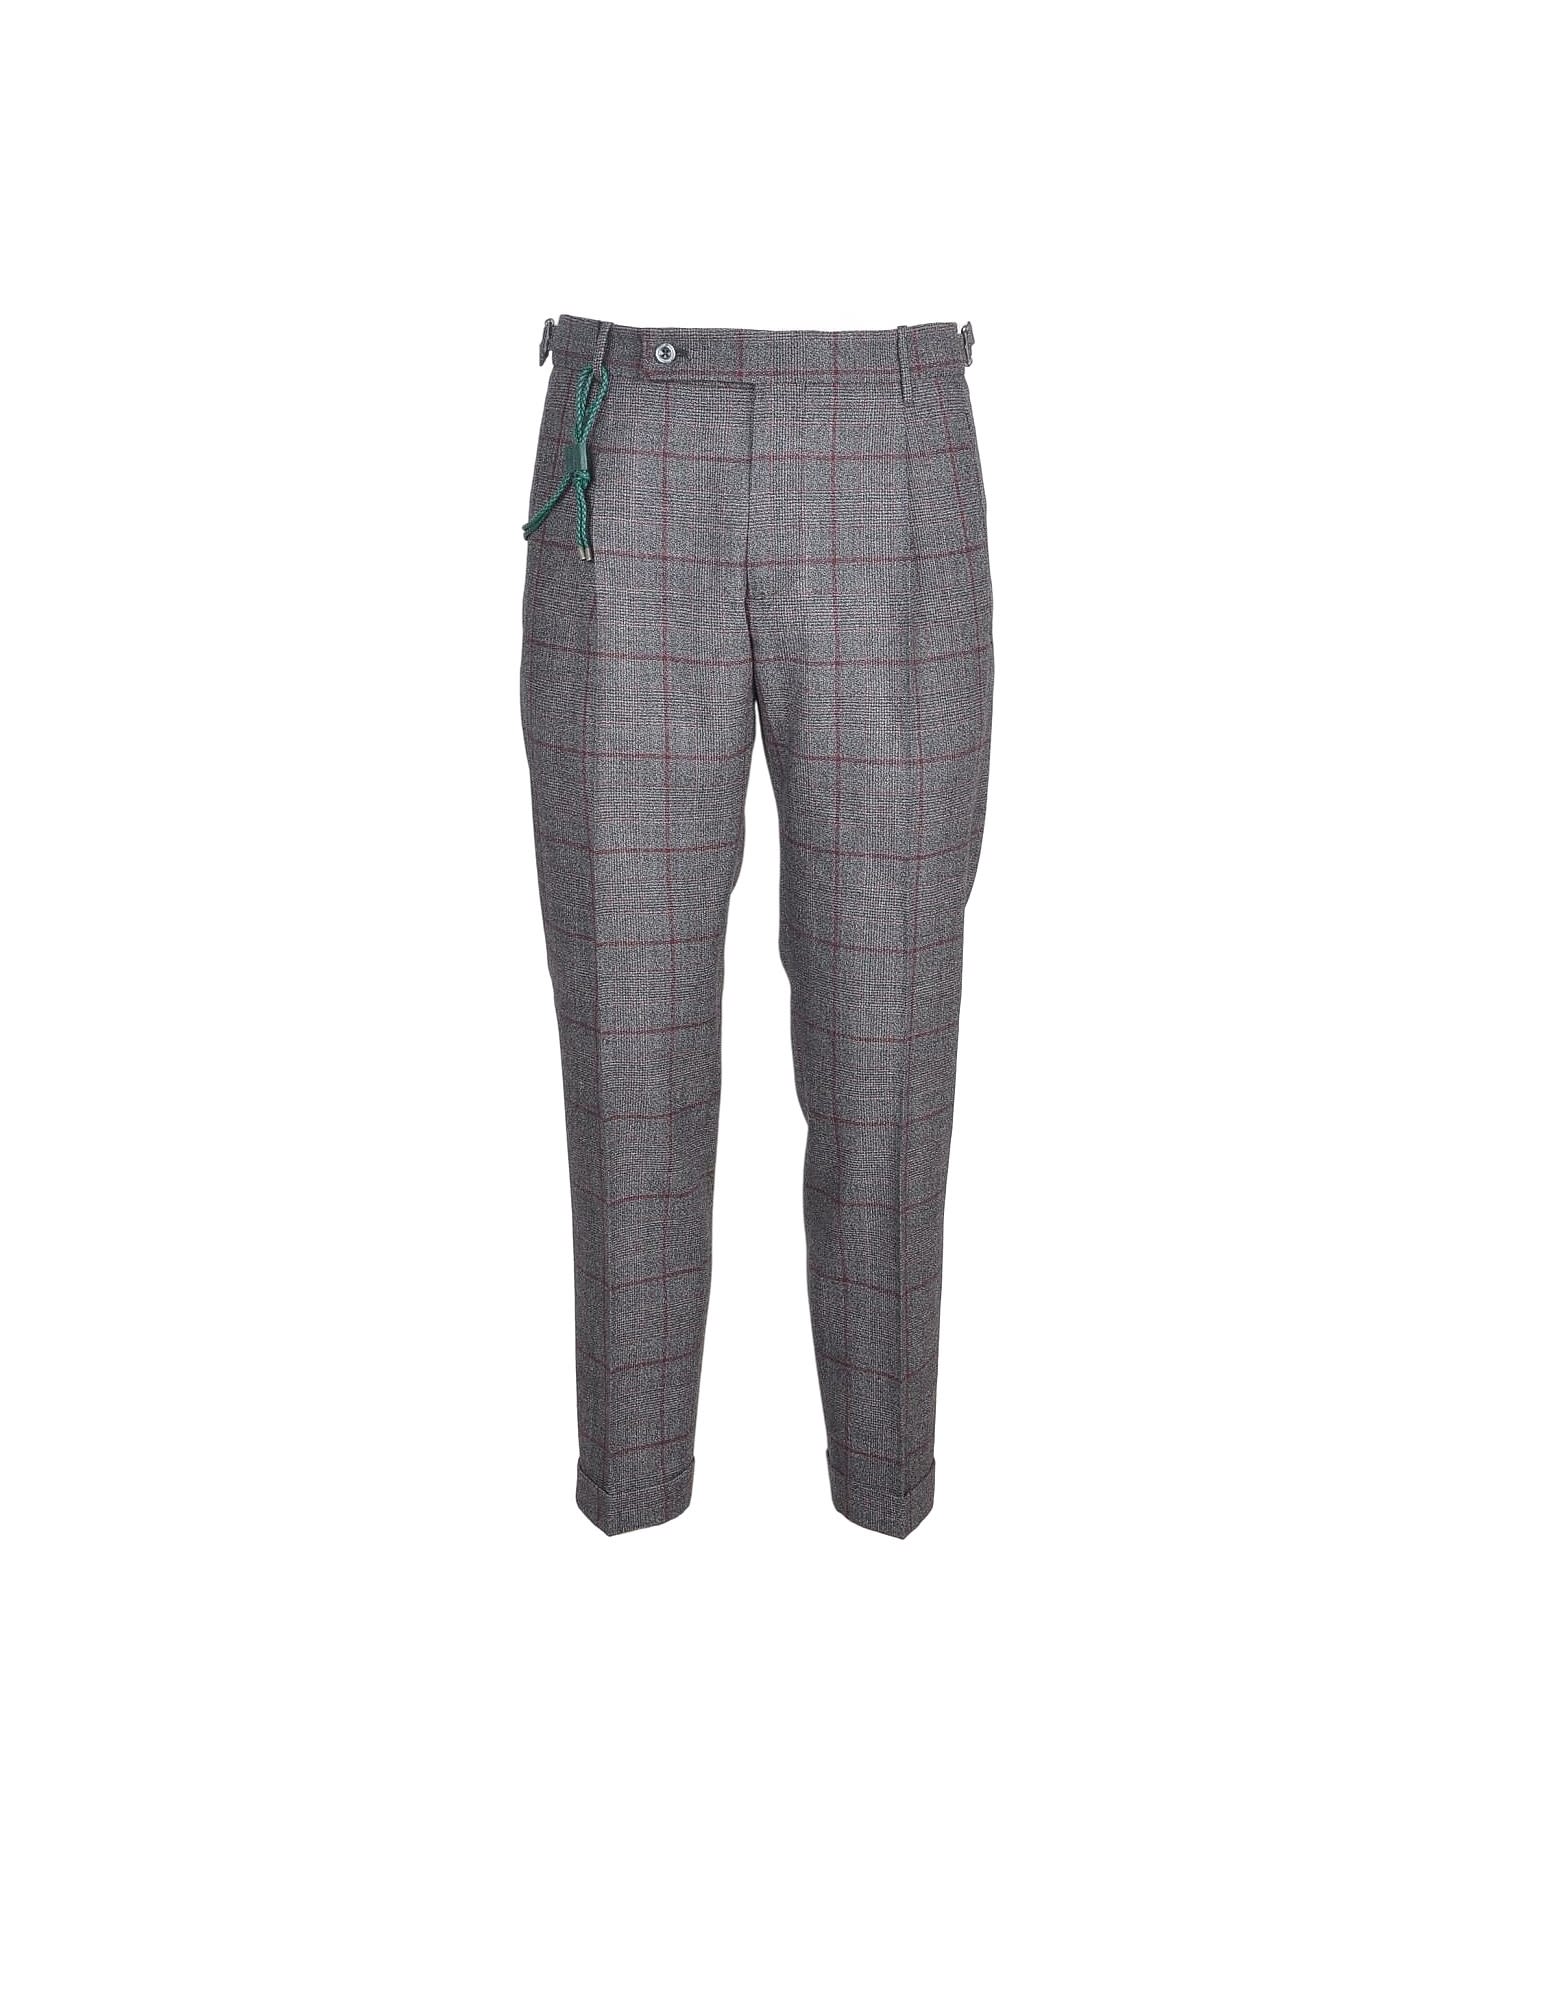 Berwich Mens Gray / Bordeaux Pants